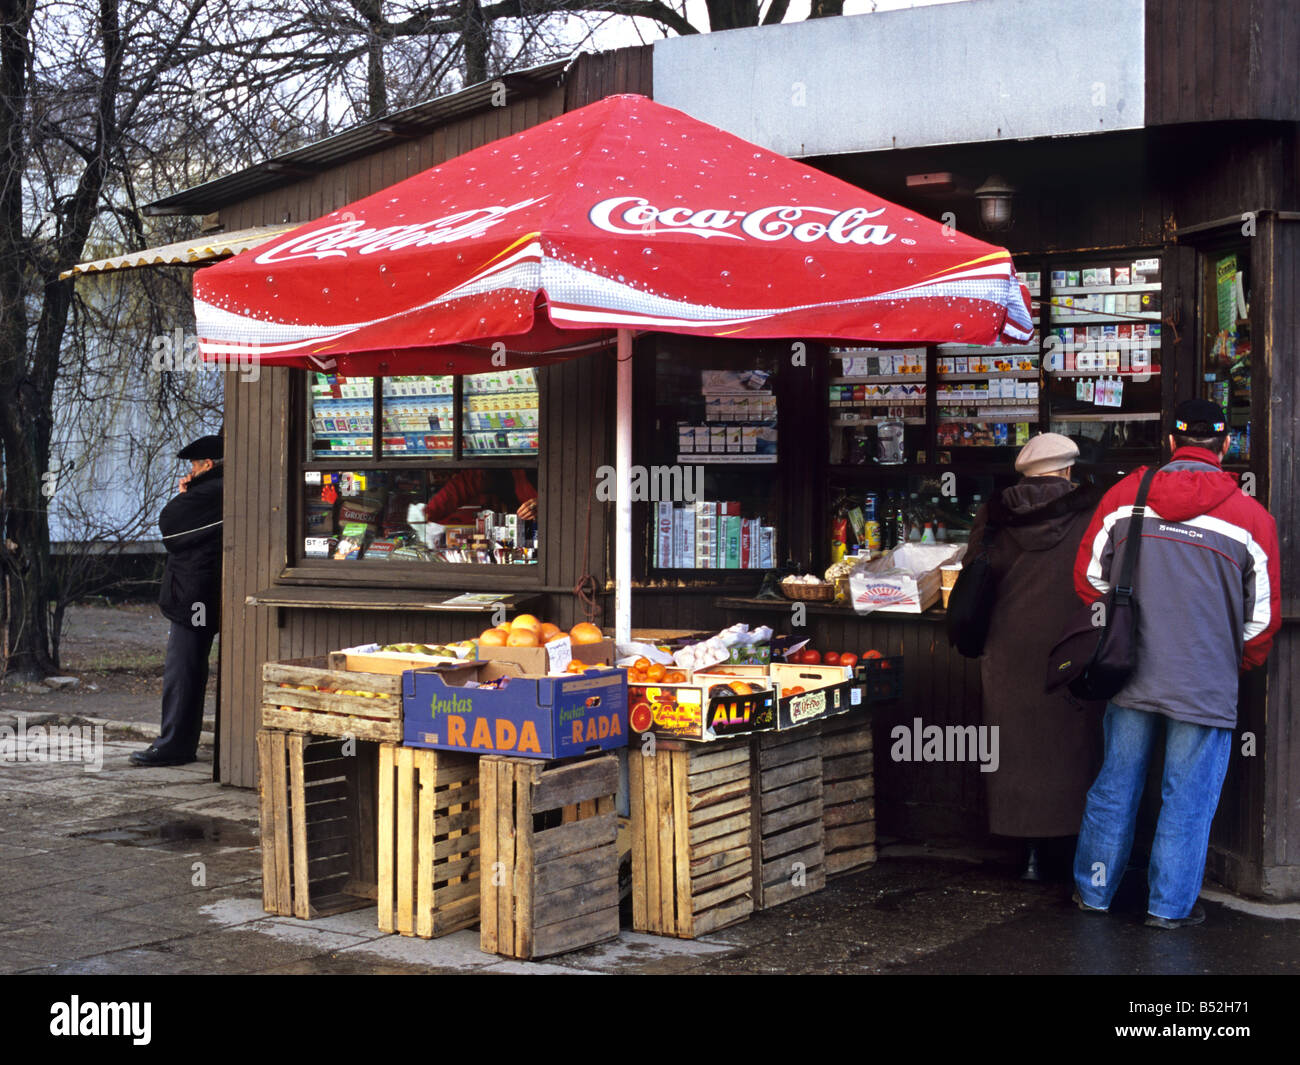 Grocer's store, Nowa Huta, Krakow, Poland Stock Photo - Alamy